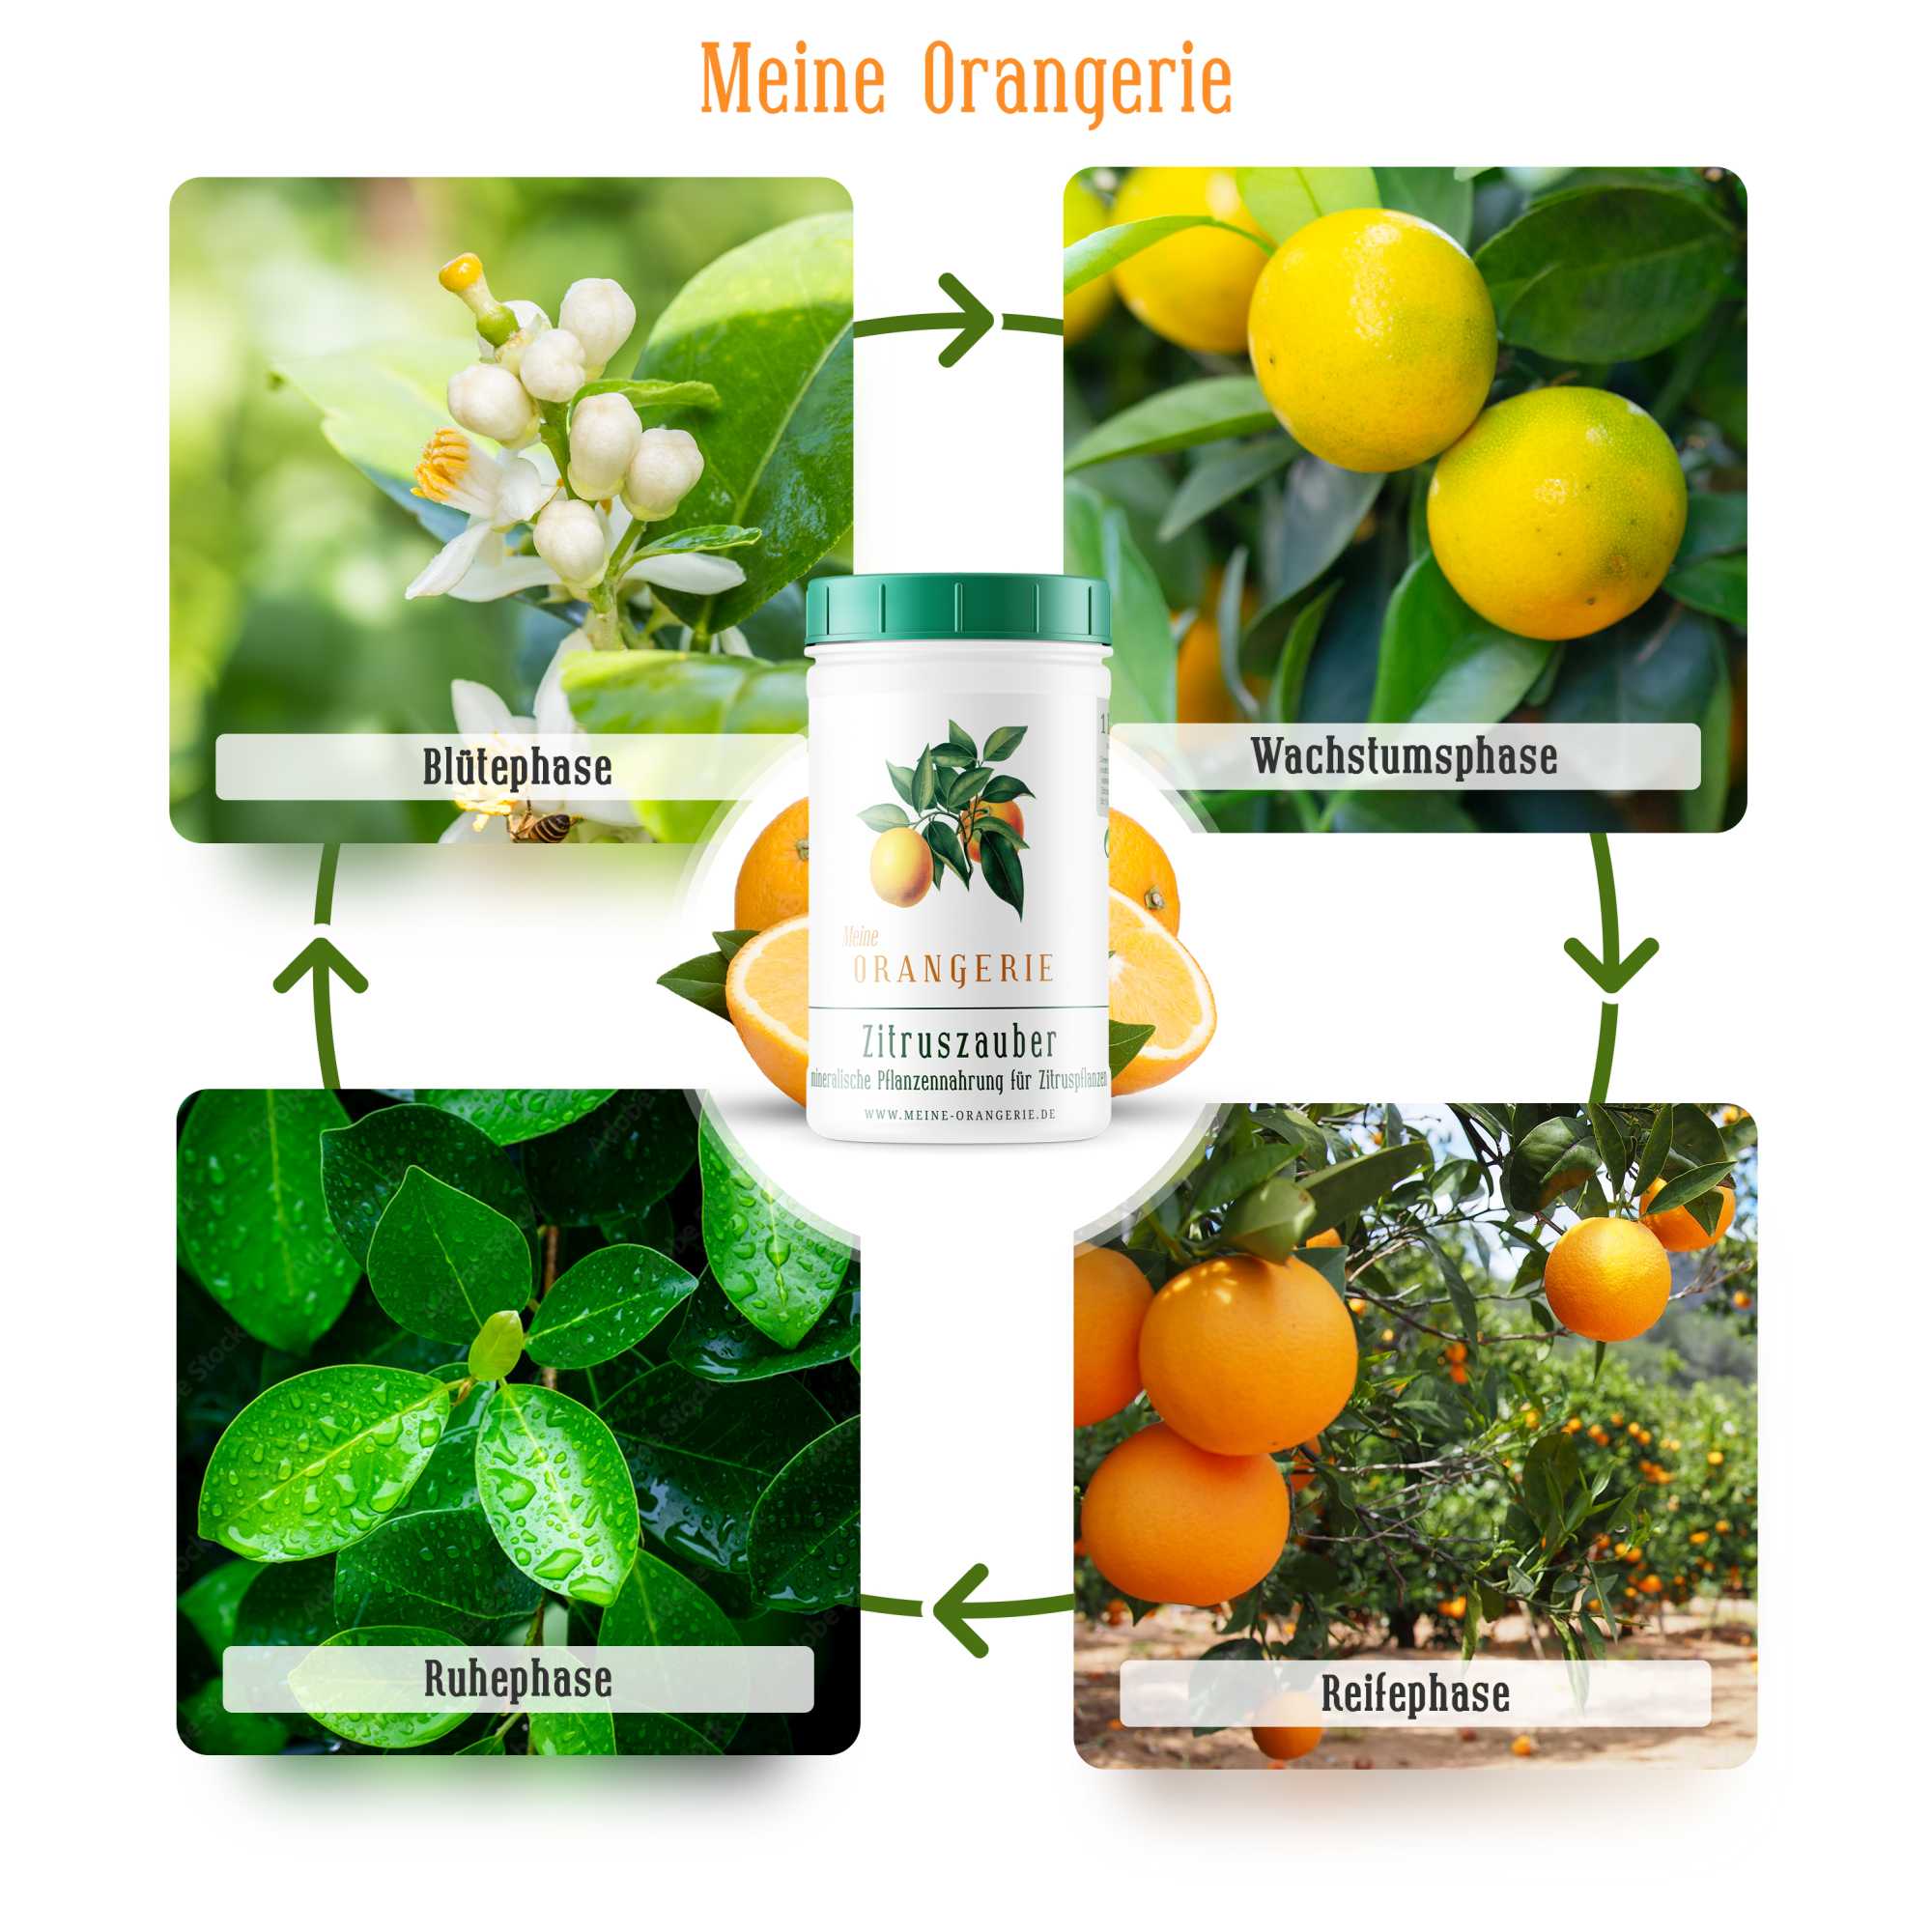 Meine Orangerie Zitruszauber |500g| Profi Zitrusdünger für alle Zitruspflanzen